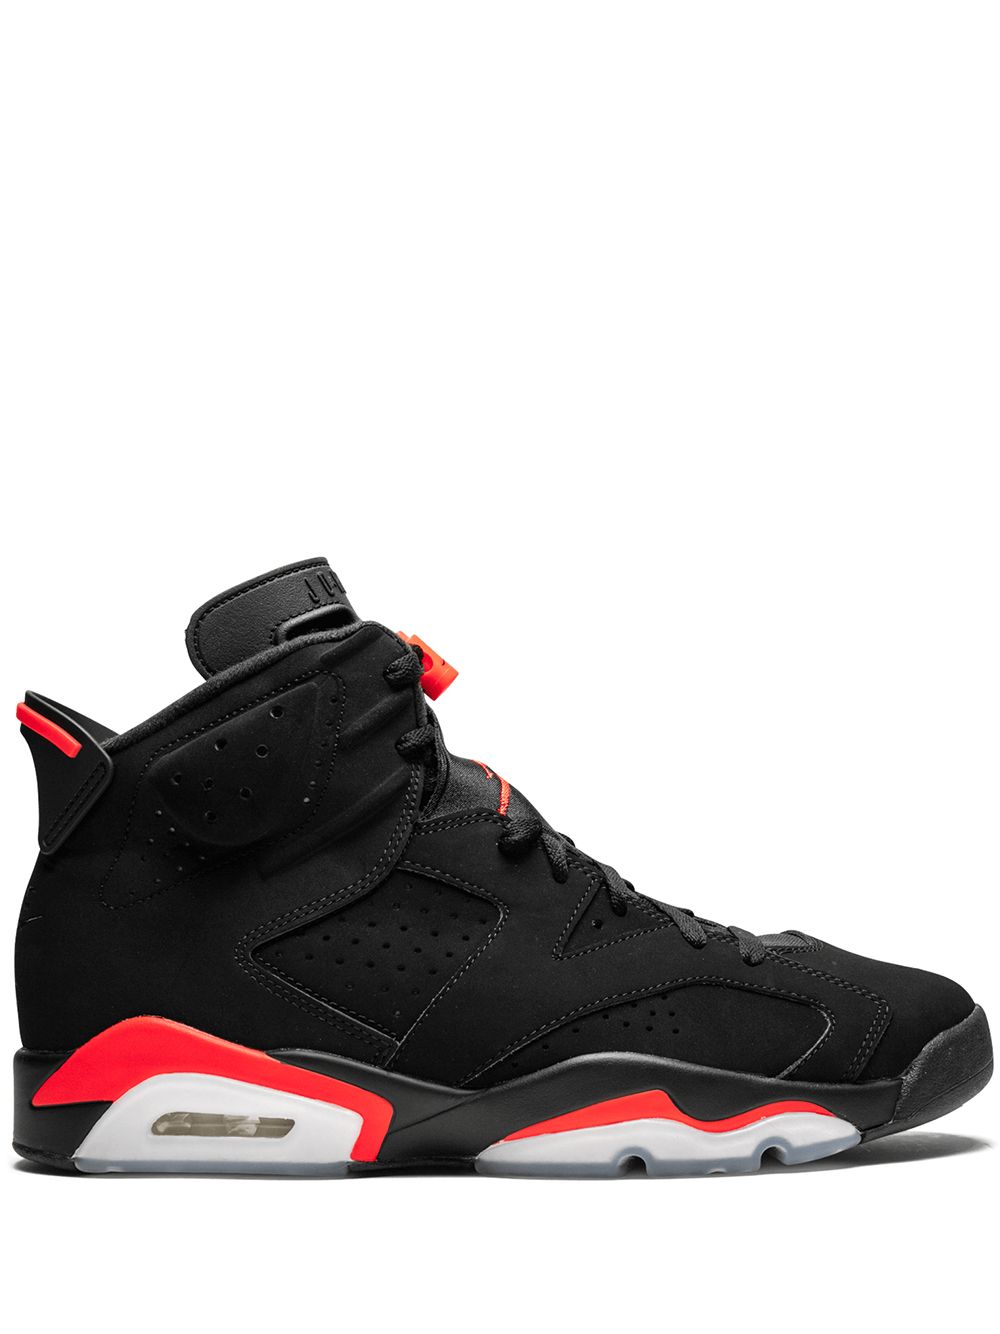 Jordan Air Jordan 6 Retro "Infrared 2019" sneakers - Black